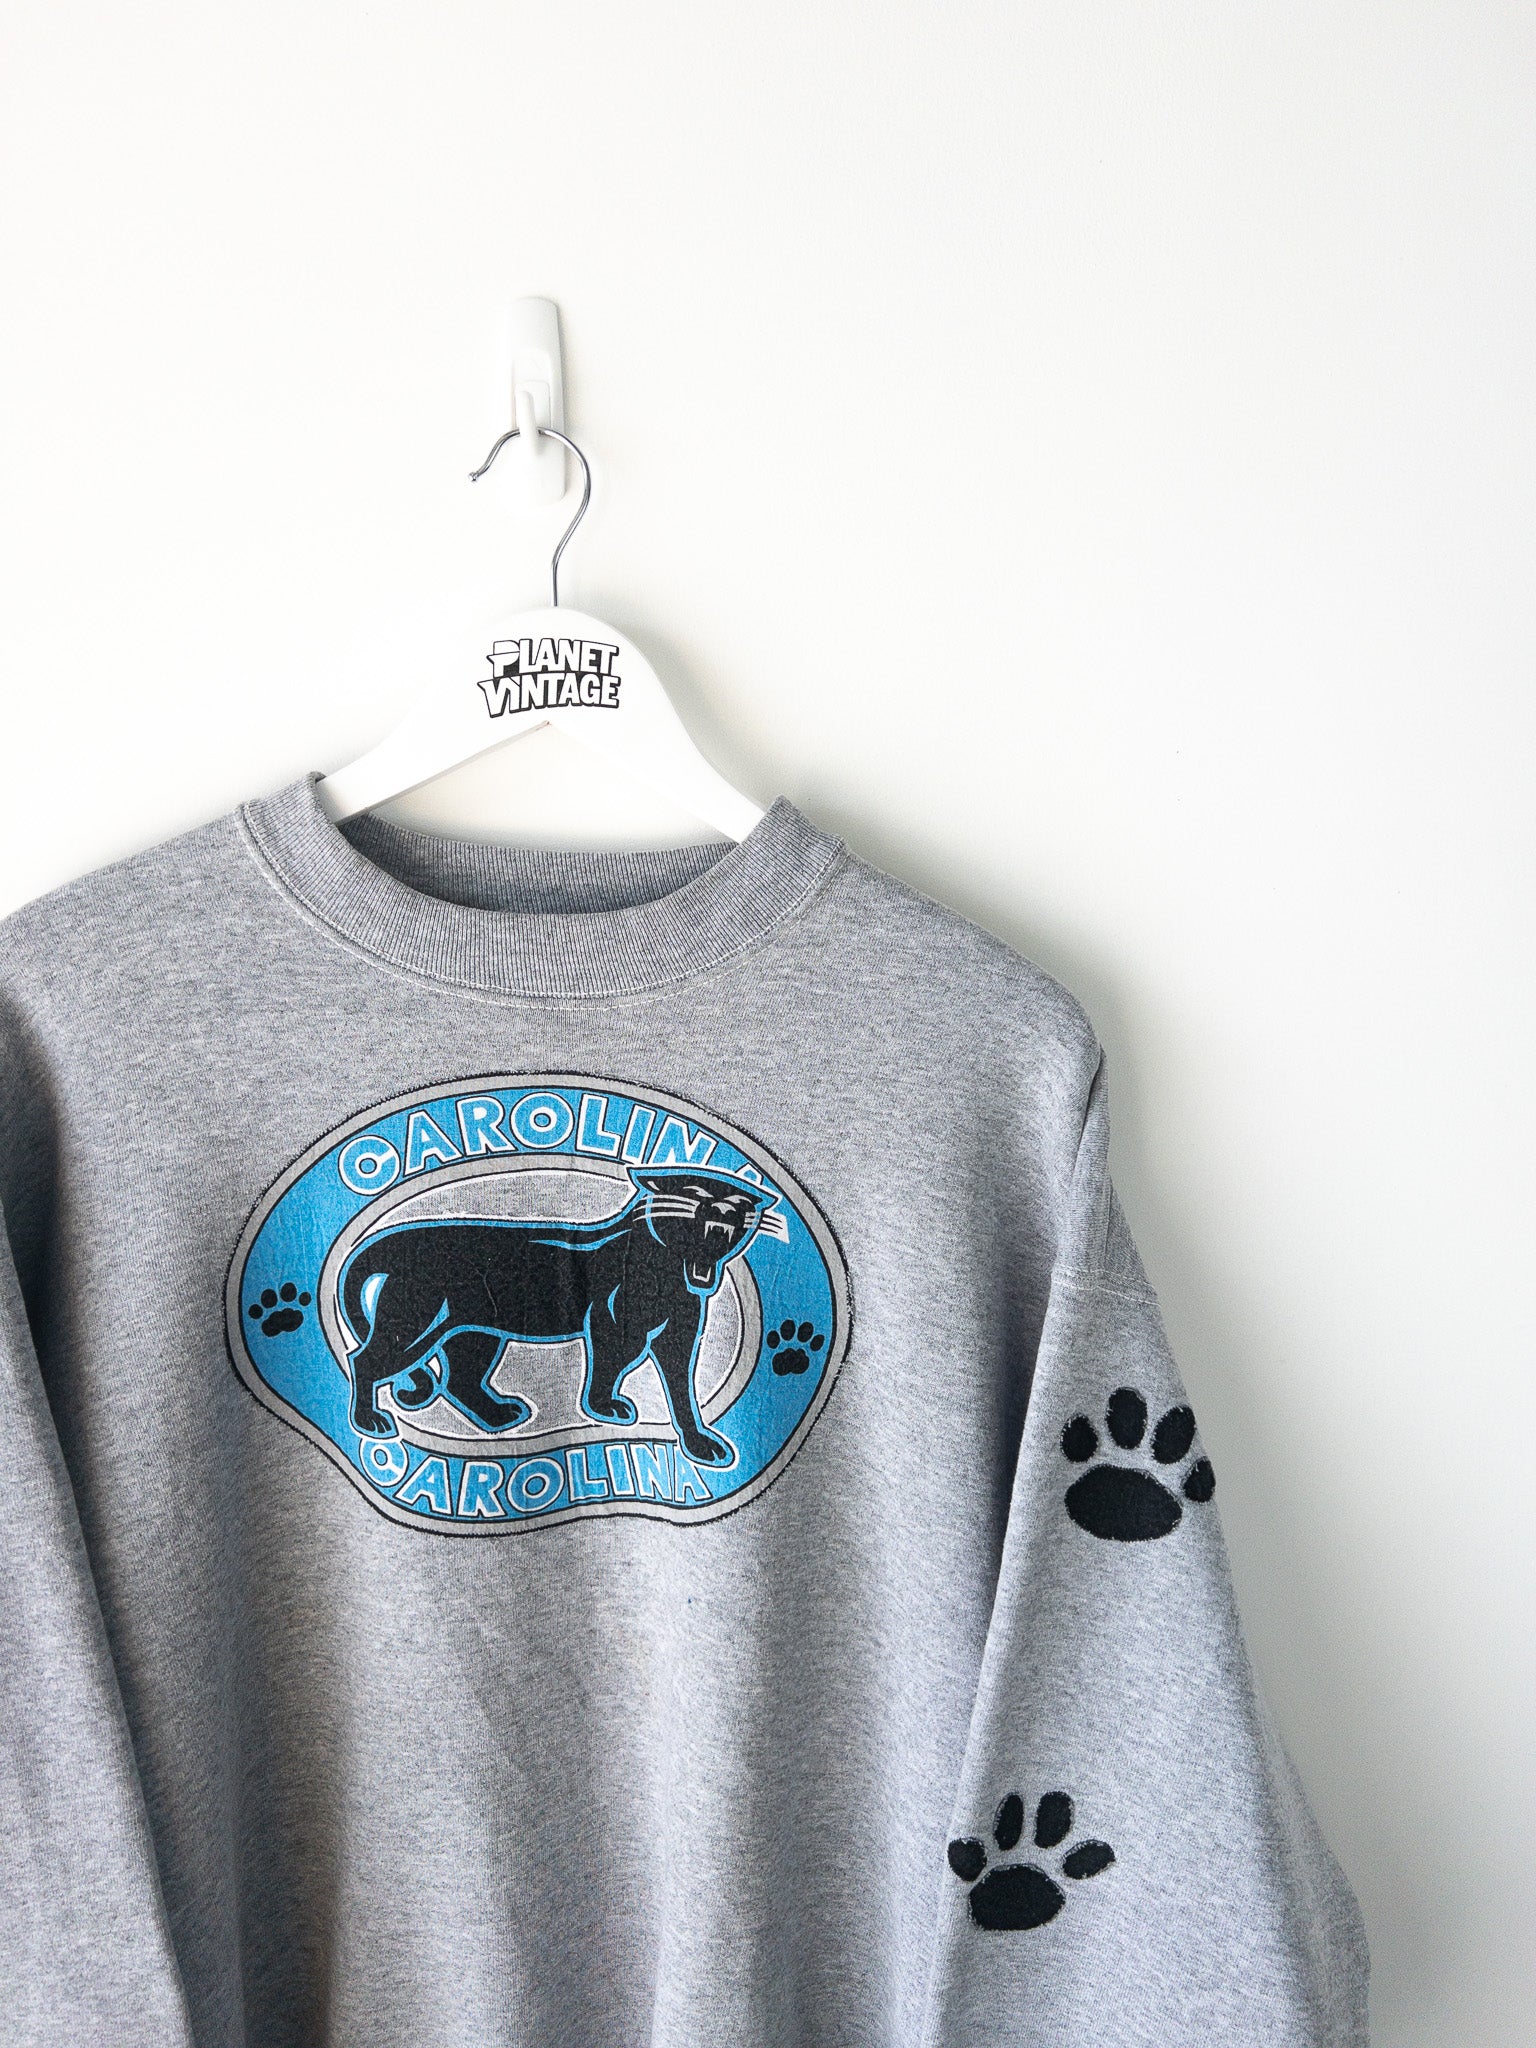 Vintage Carolina Panthers Sweatshirt (XL)